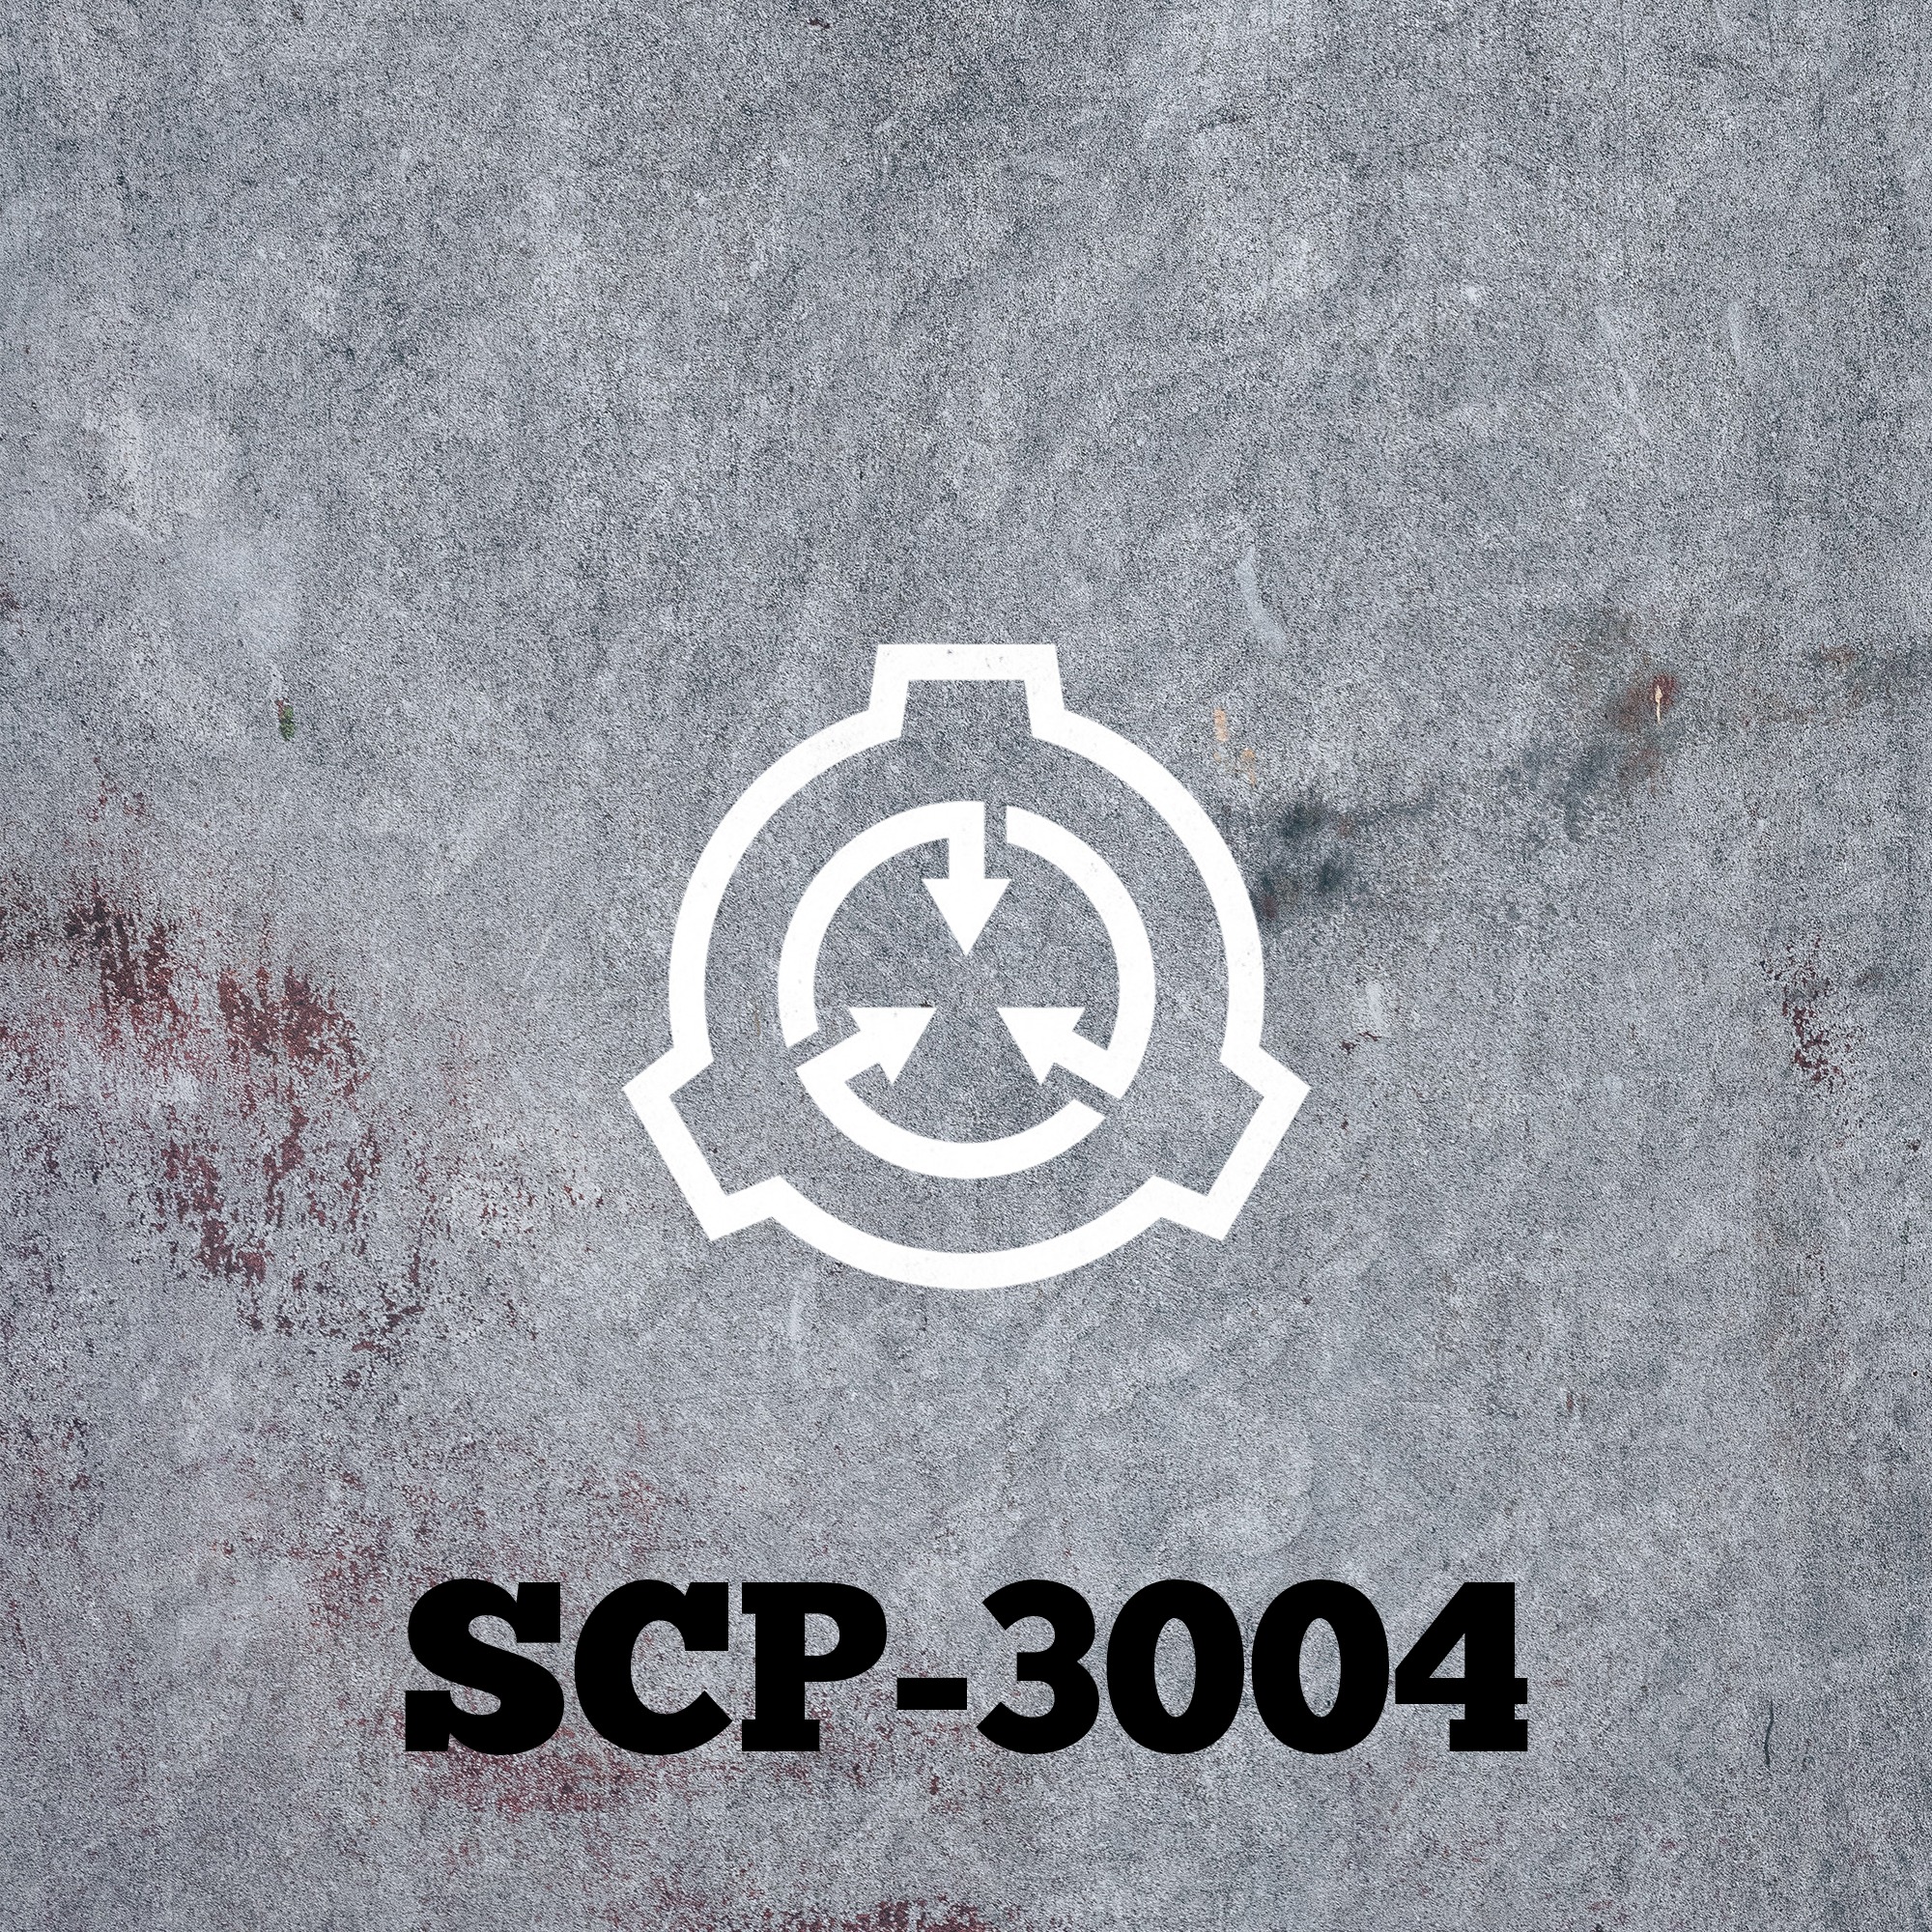 SCP-3004 3/5 Imago (Current Document)